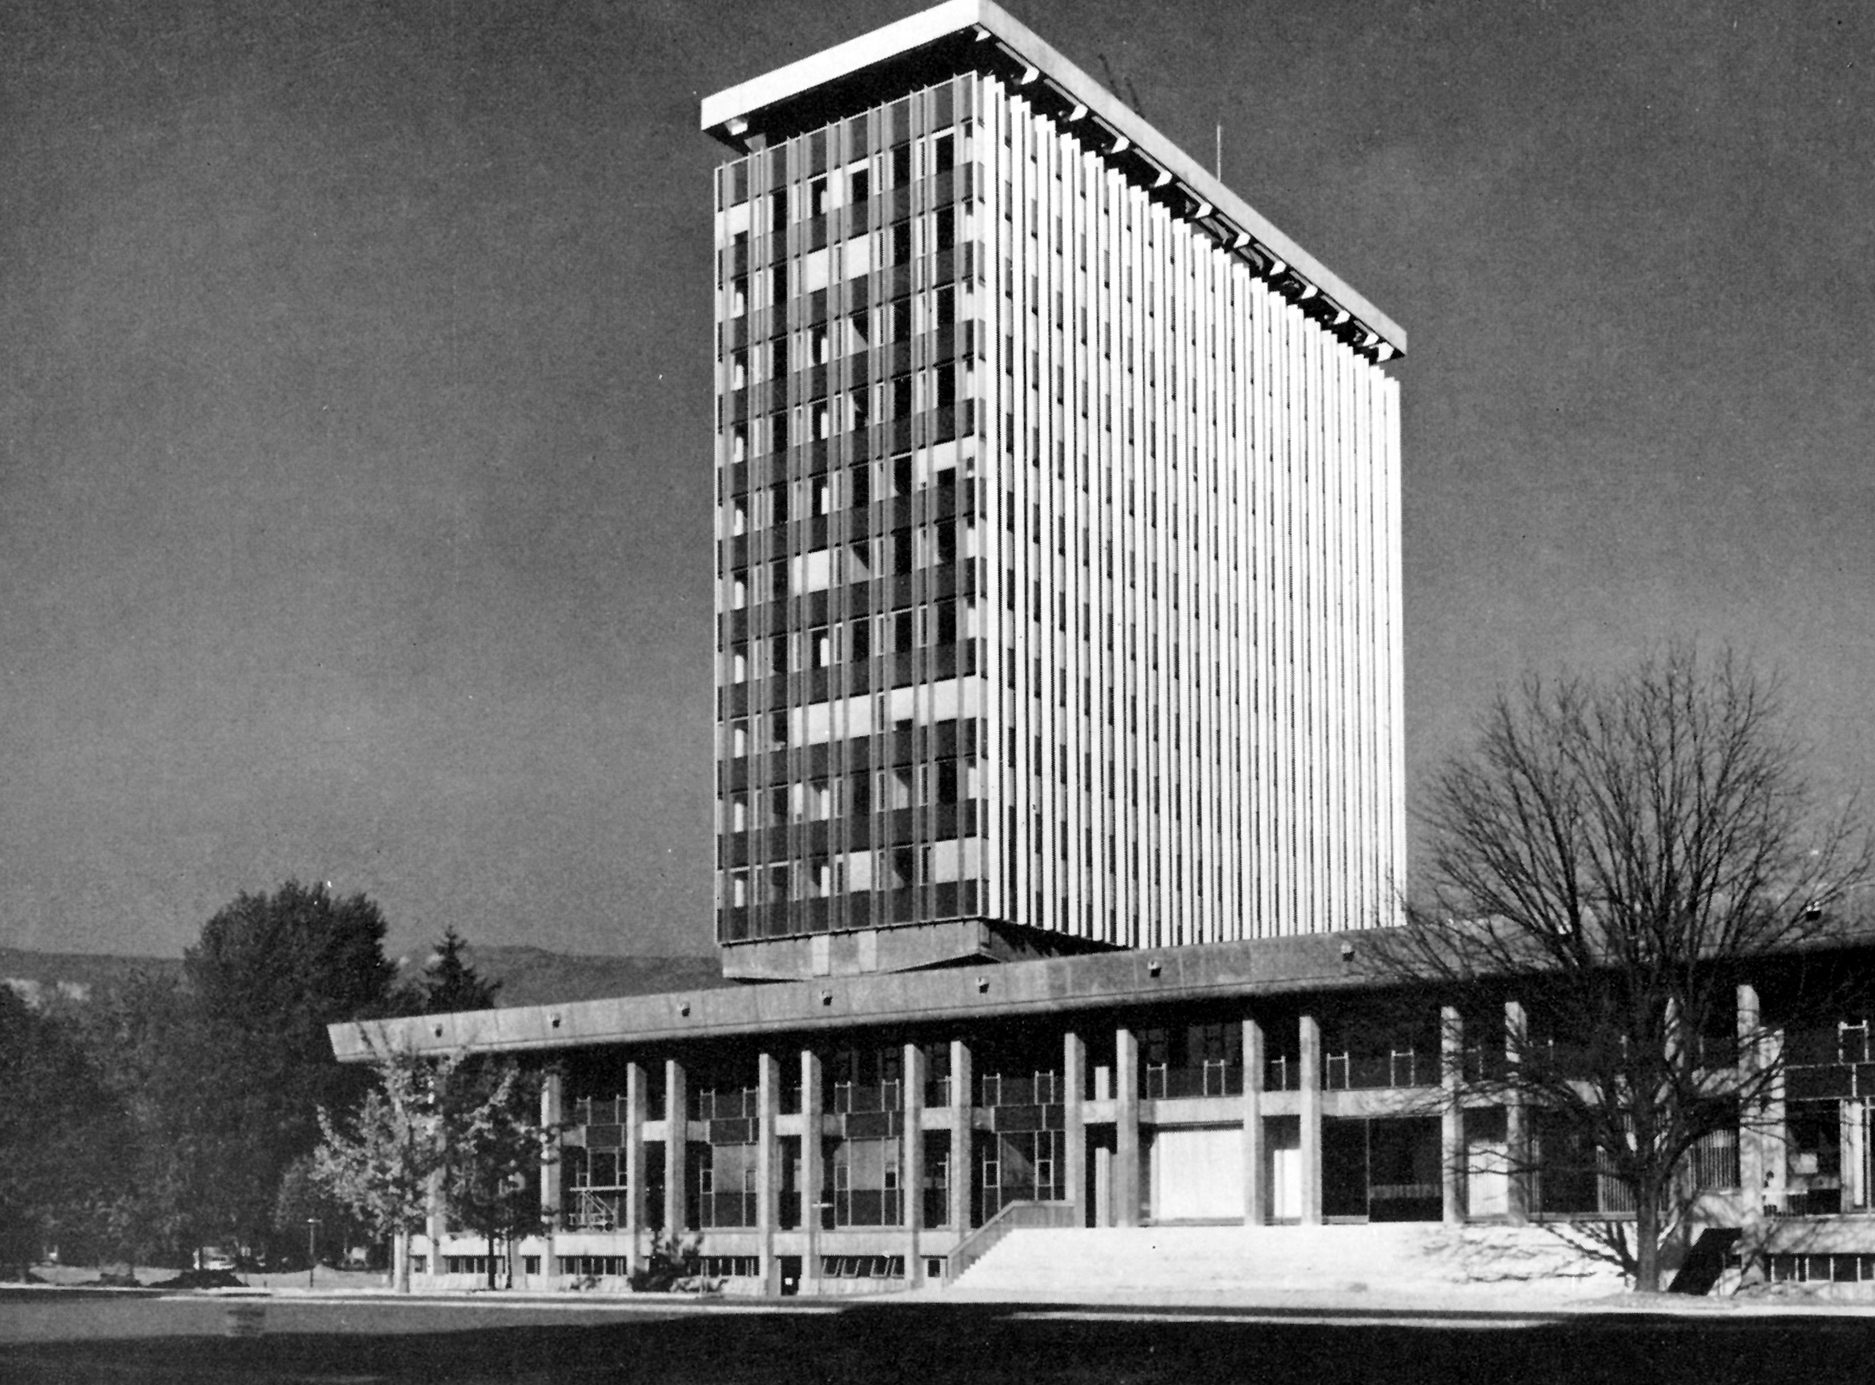 Hôtel de ville, Grenoble, 1968 (M. Novarina, arch.). Façade CIMT Lorraine – Jean Prouvé.